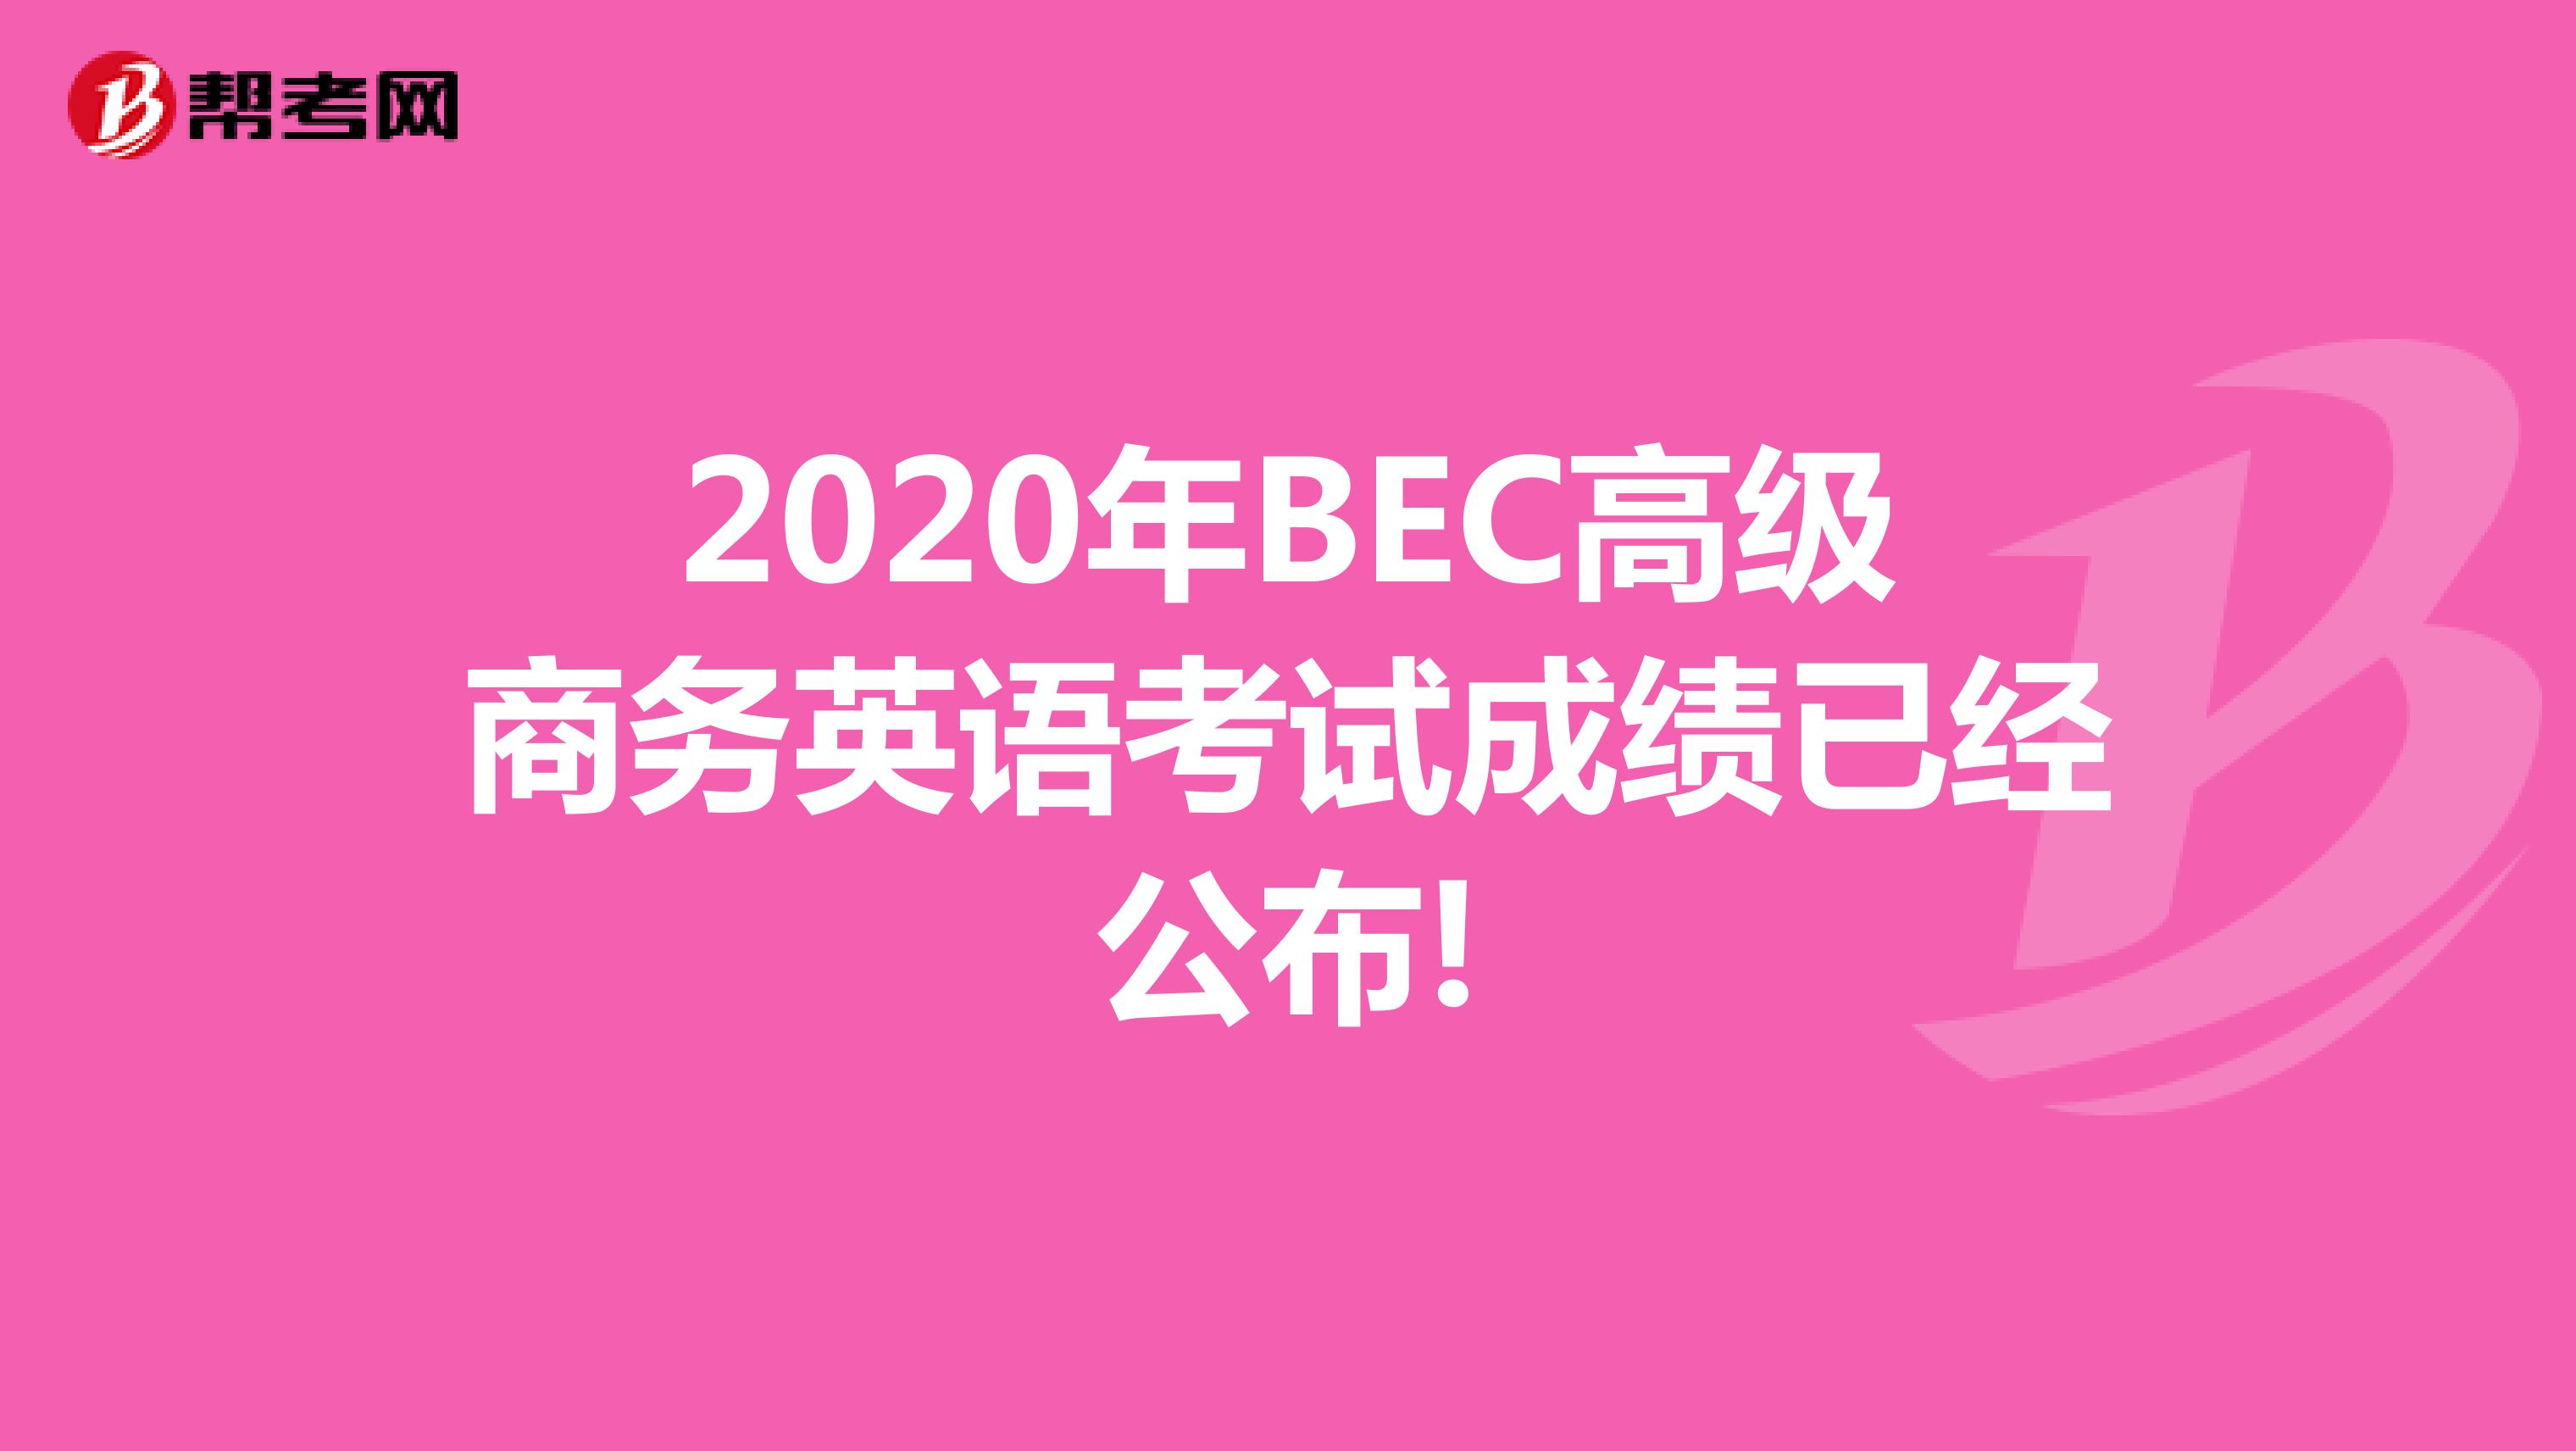 2020年BEC高级商务英语考试成绩已经公布!